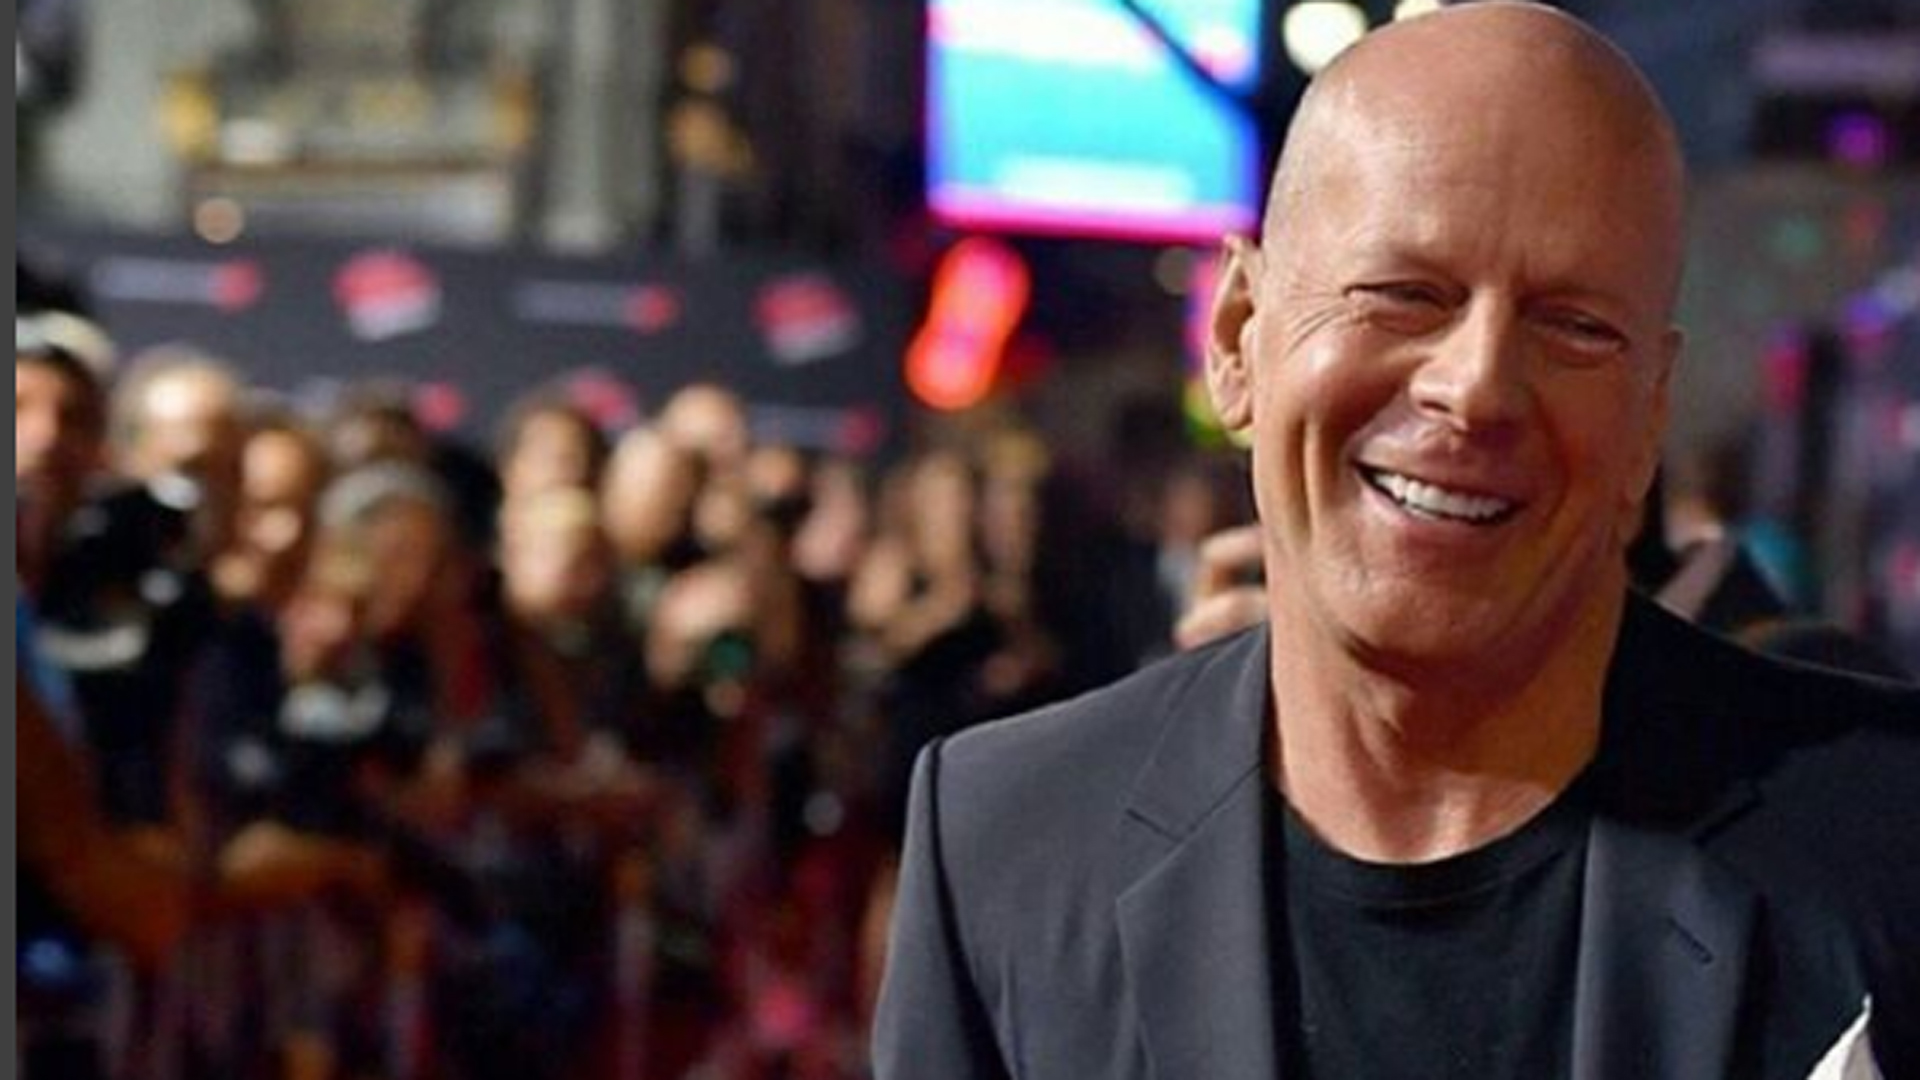 El popular actor y héroe de múltiples películas de acción Bruce Willis, de 67 años, se retiró de la actuación luego de ser diagnosticado con afasia, una enfermedad cognitiva que deriva en la pérdida de capacidad para expresarse y que afecta a la capacidad de comprensión

